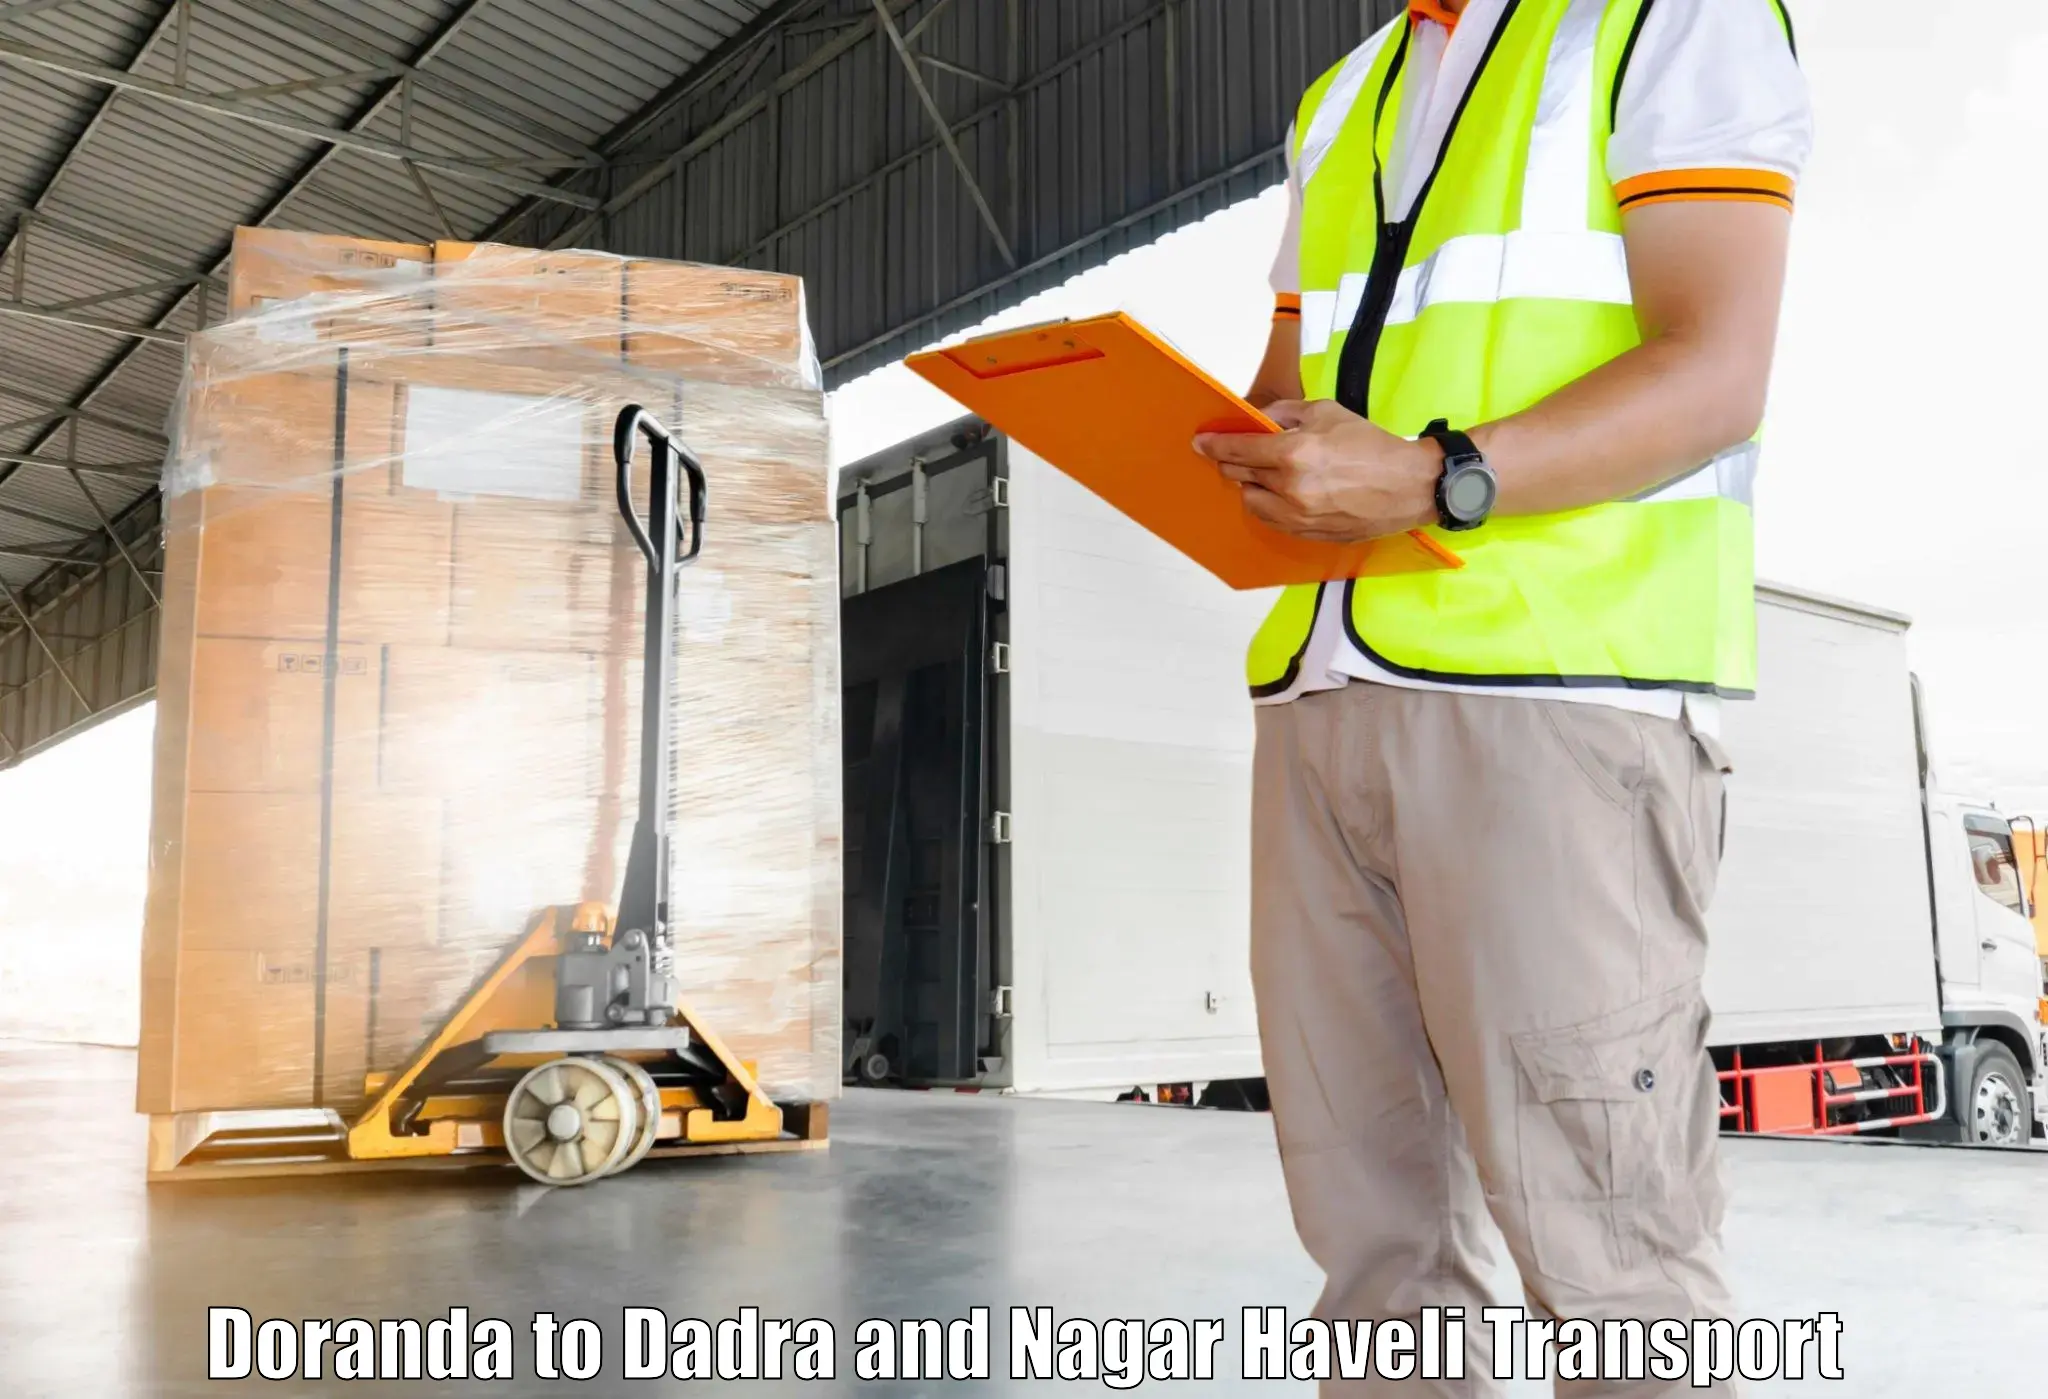 Furniture transport service Doranda to Dadra and Nagar Haveli